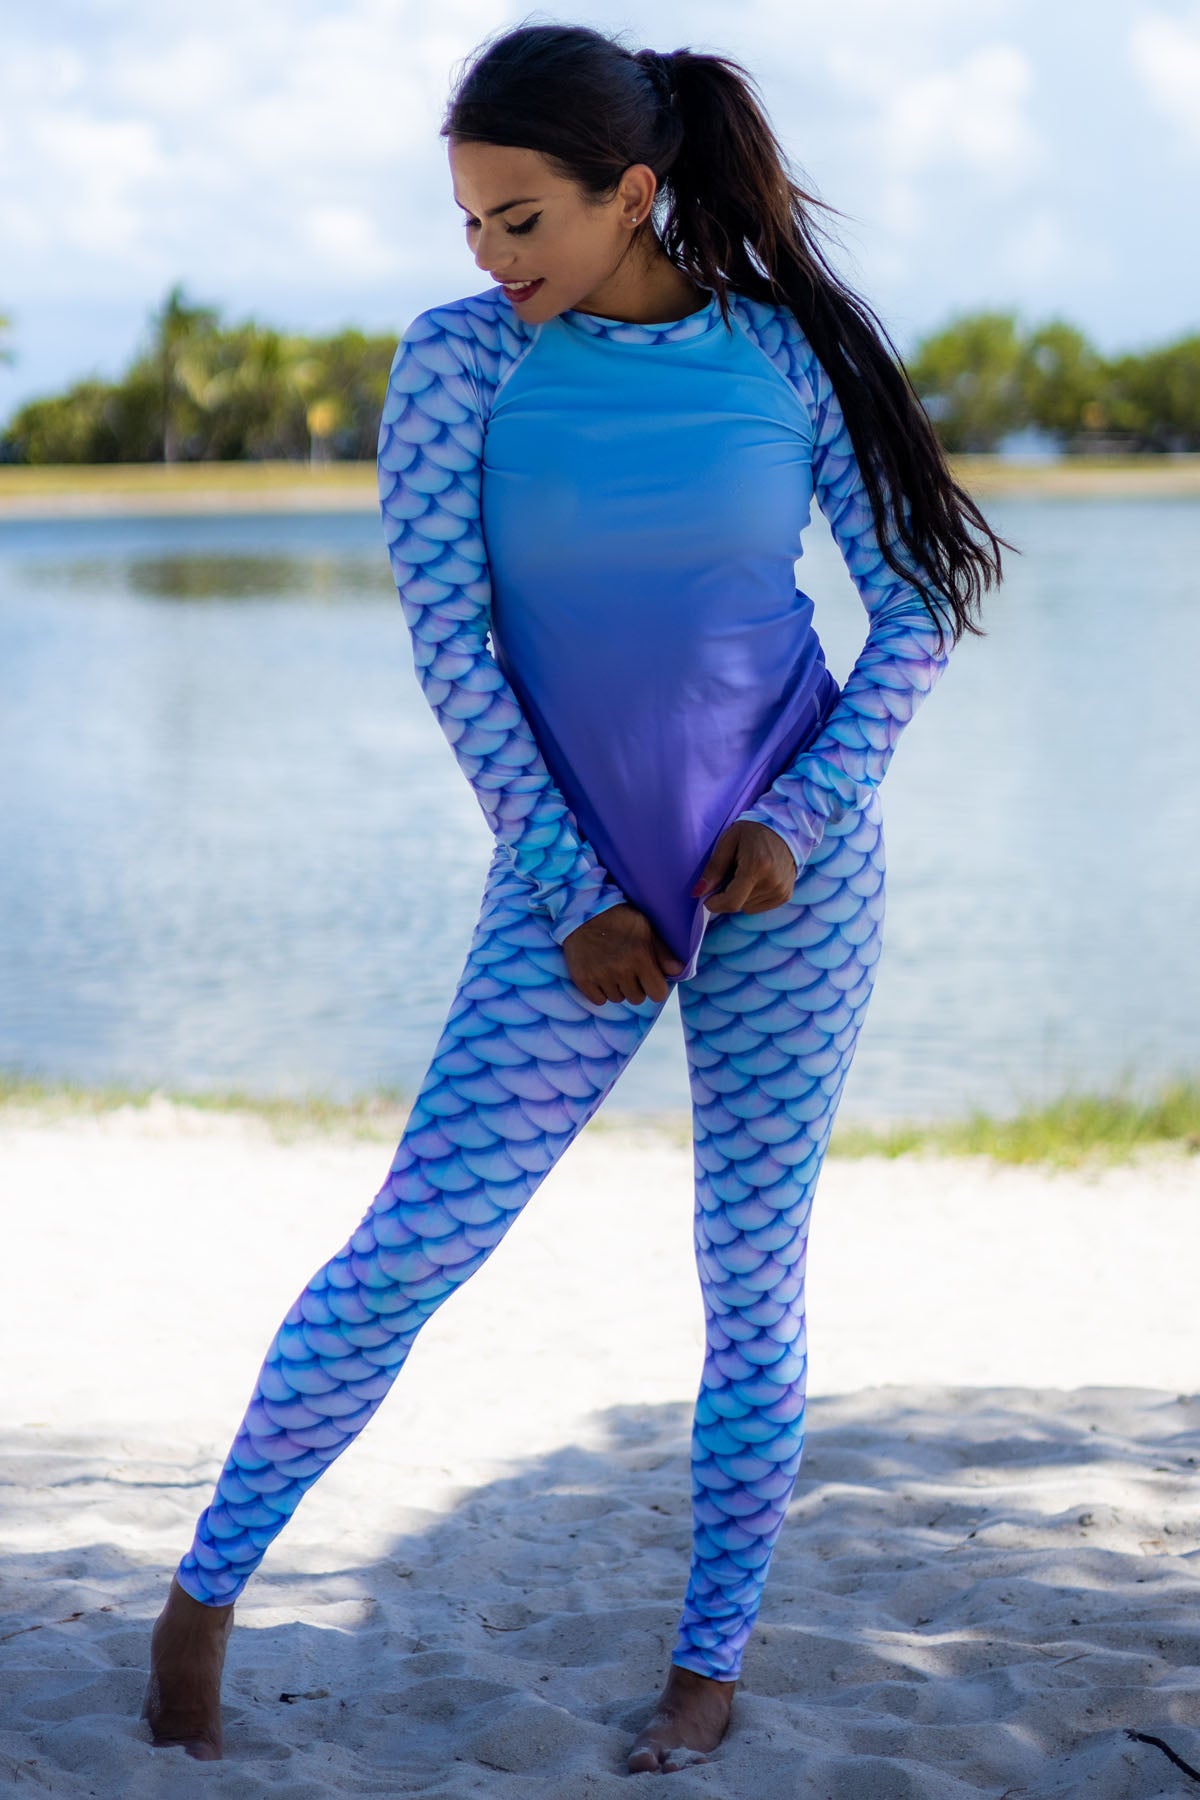 Pin by Oneonly on Selfie  Girls in leggings, Mermaid leggings, Leggings